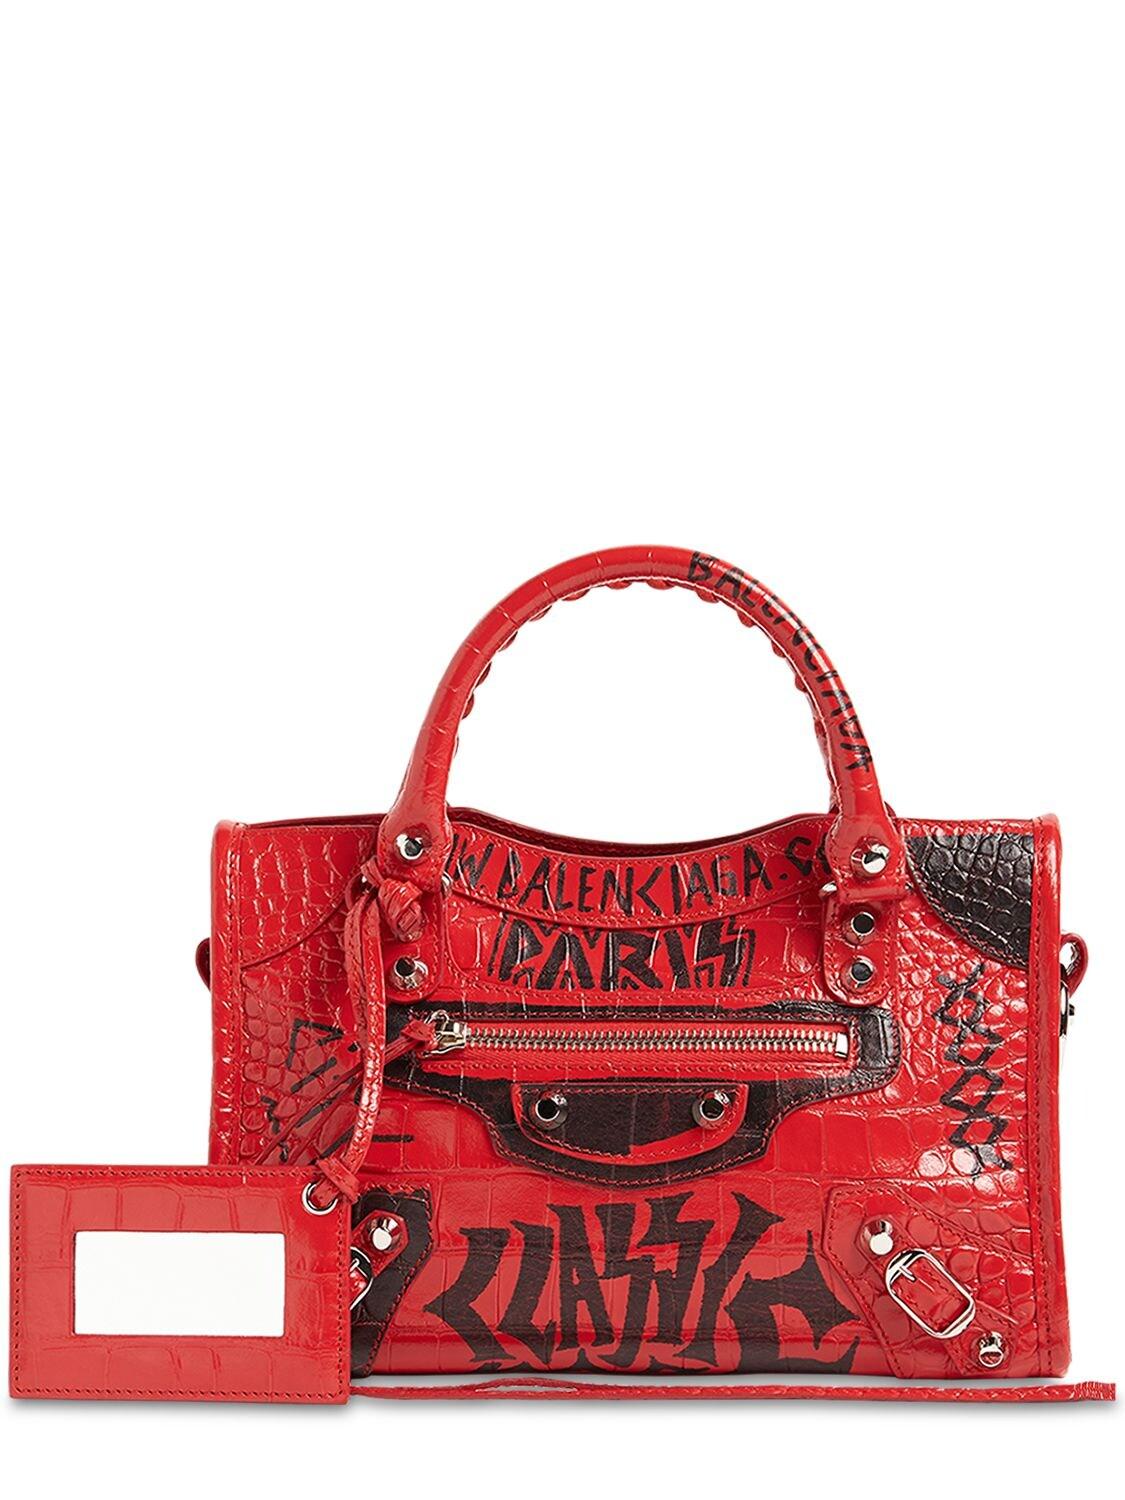 Balenciaga Mini City Graffiti Print Croco Leather Bag in Red